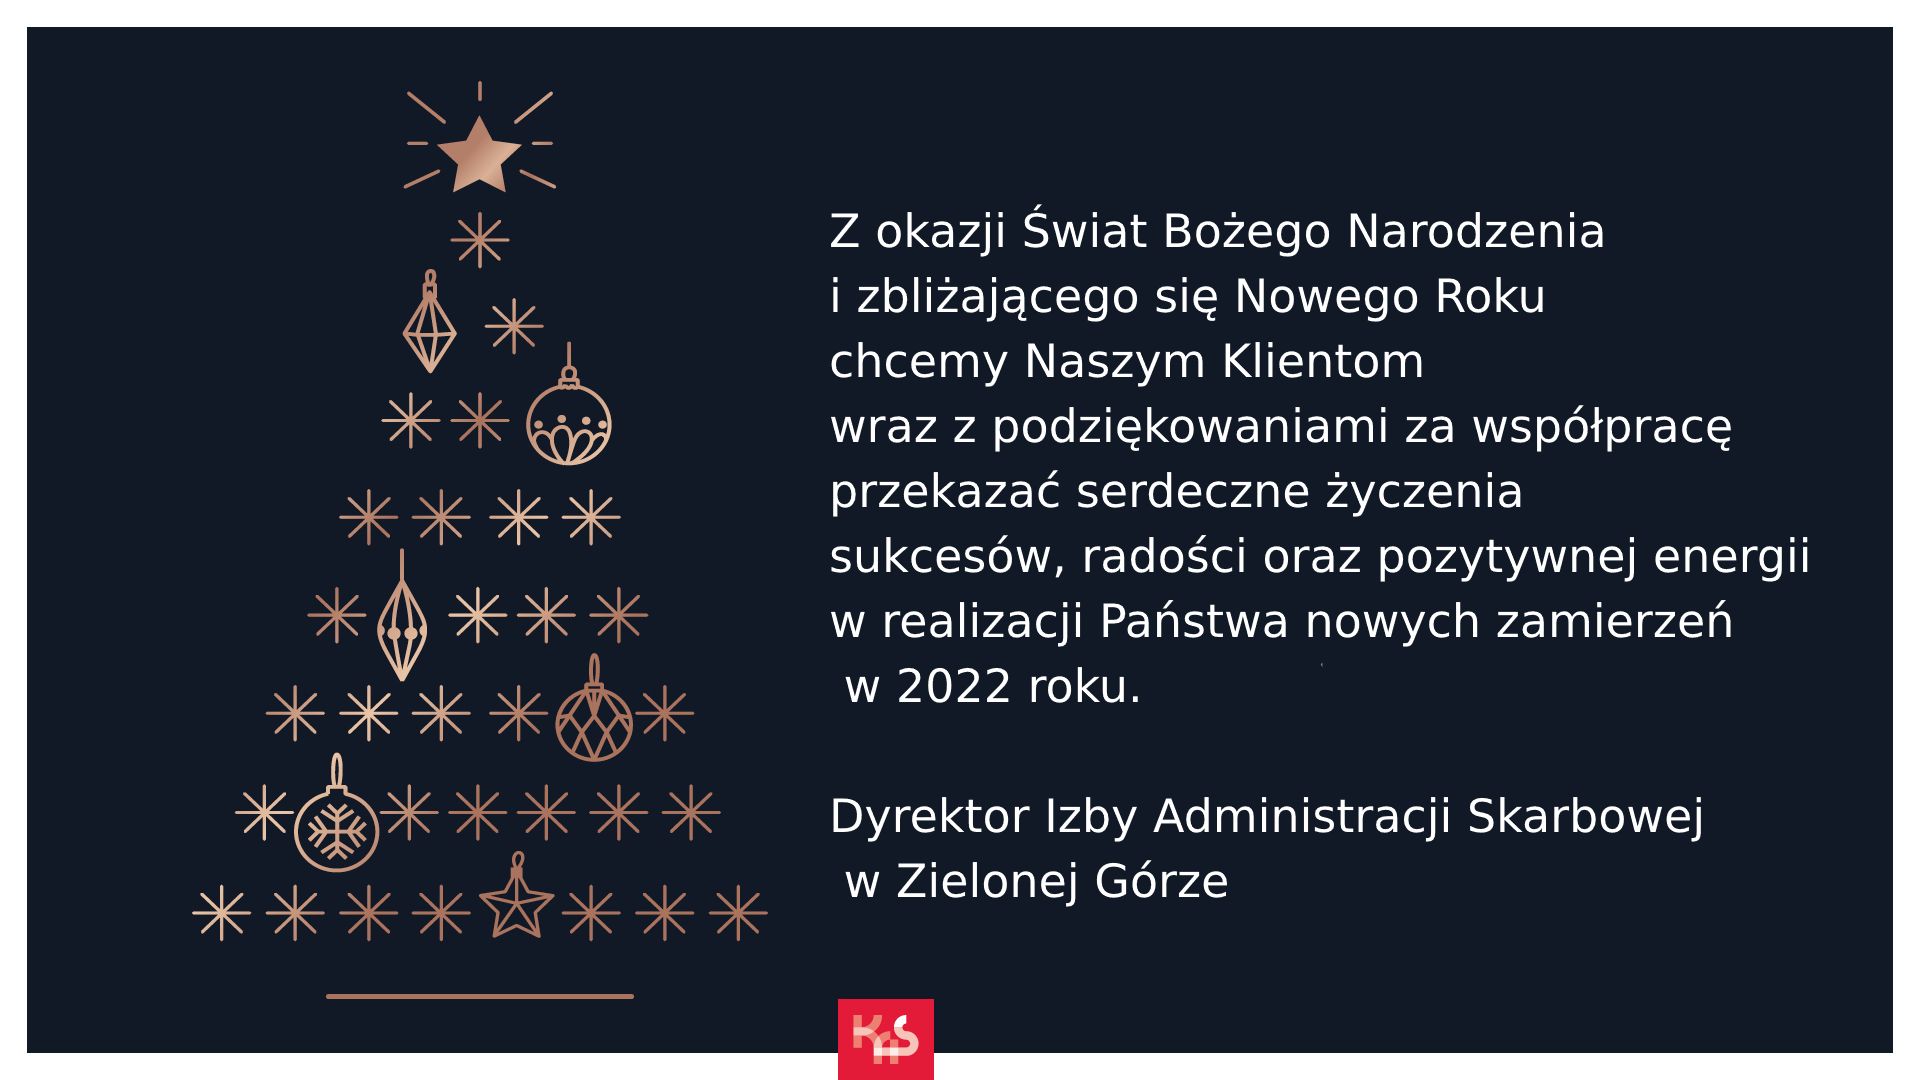 Życzenia świąteczne od Adama Andrzejewskiego Dyrektora Izby Administracji Skarbowej w Zielonej Górze